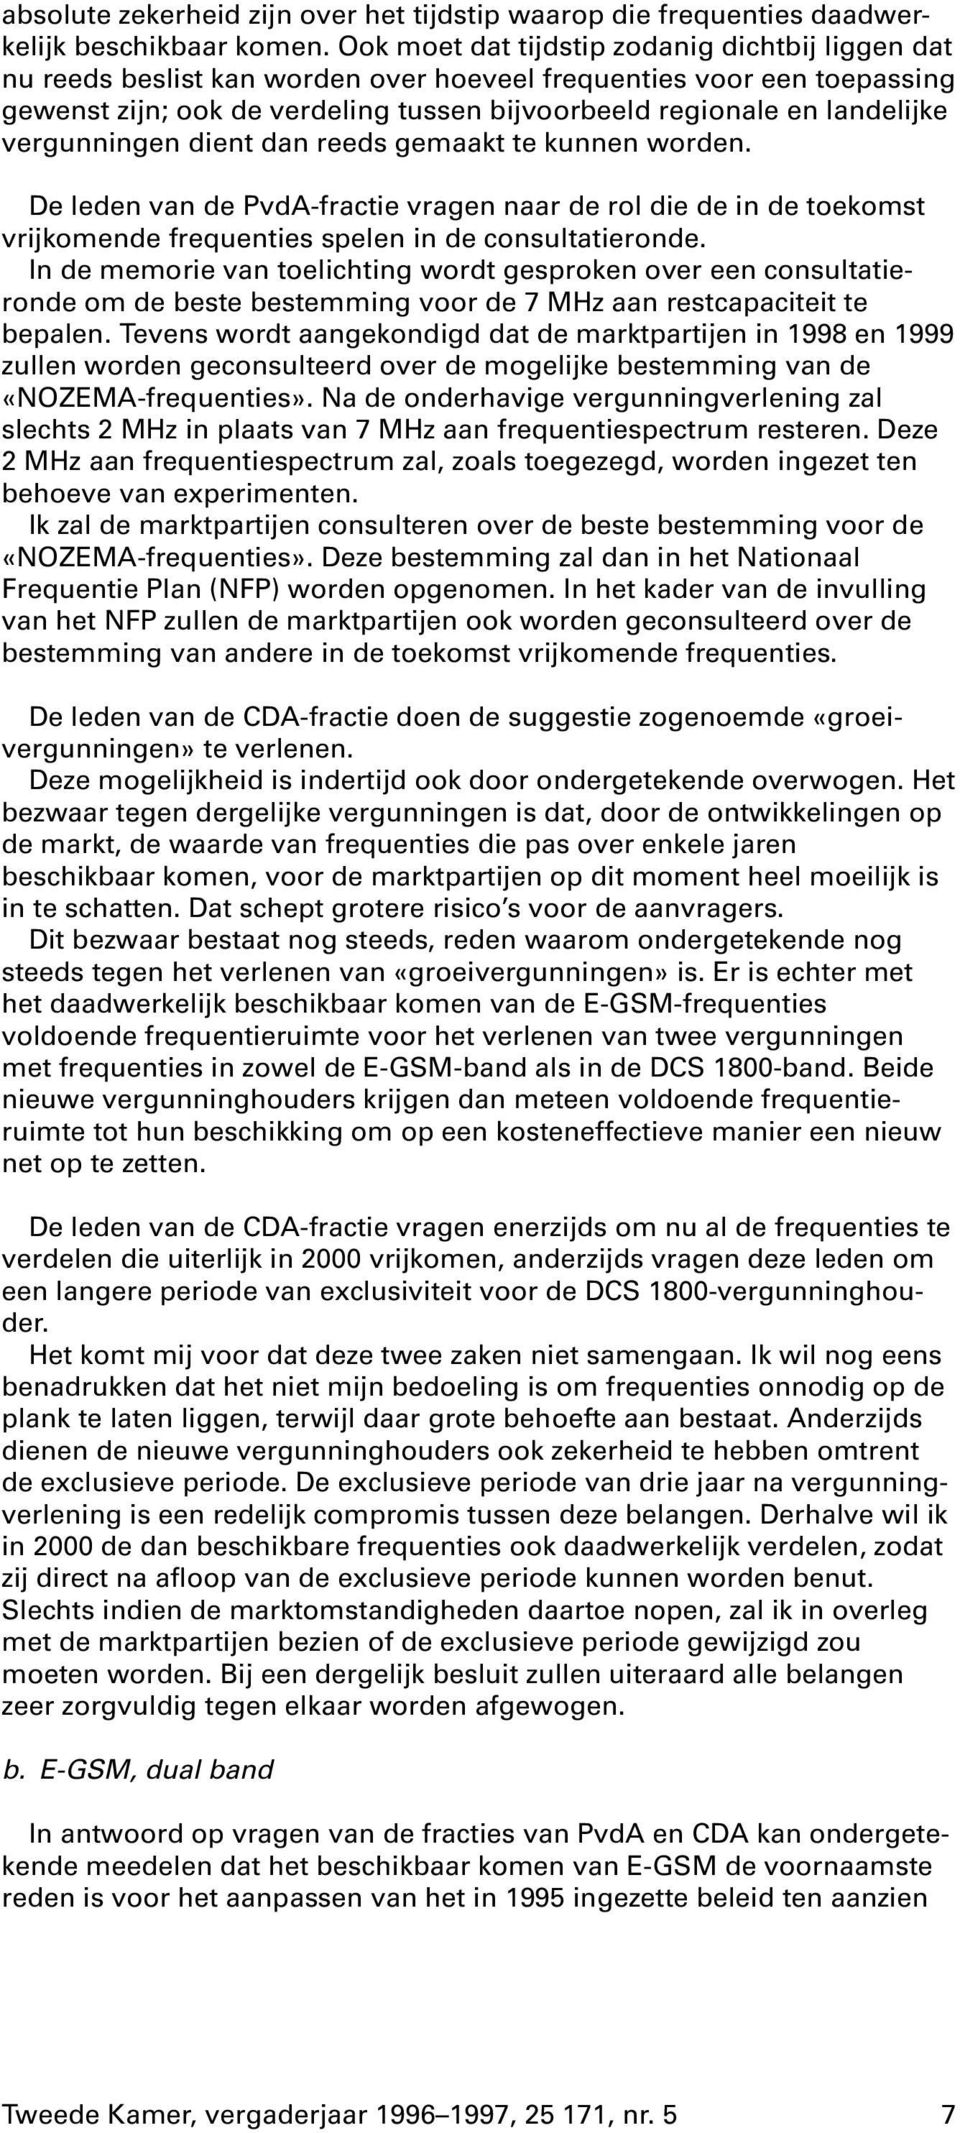 vergunningen dient dan reeds gemaakt te kunnen worden. De leden van de PvdA-fractie vragen naar de rol die de in de toekomst vrijkomende frequenties spelen in de consultatieronde.